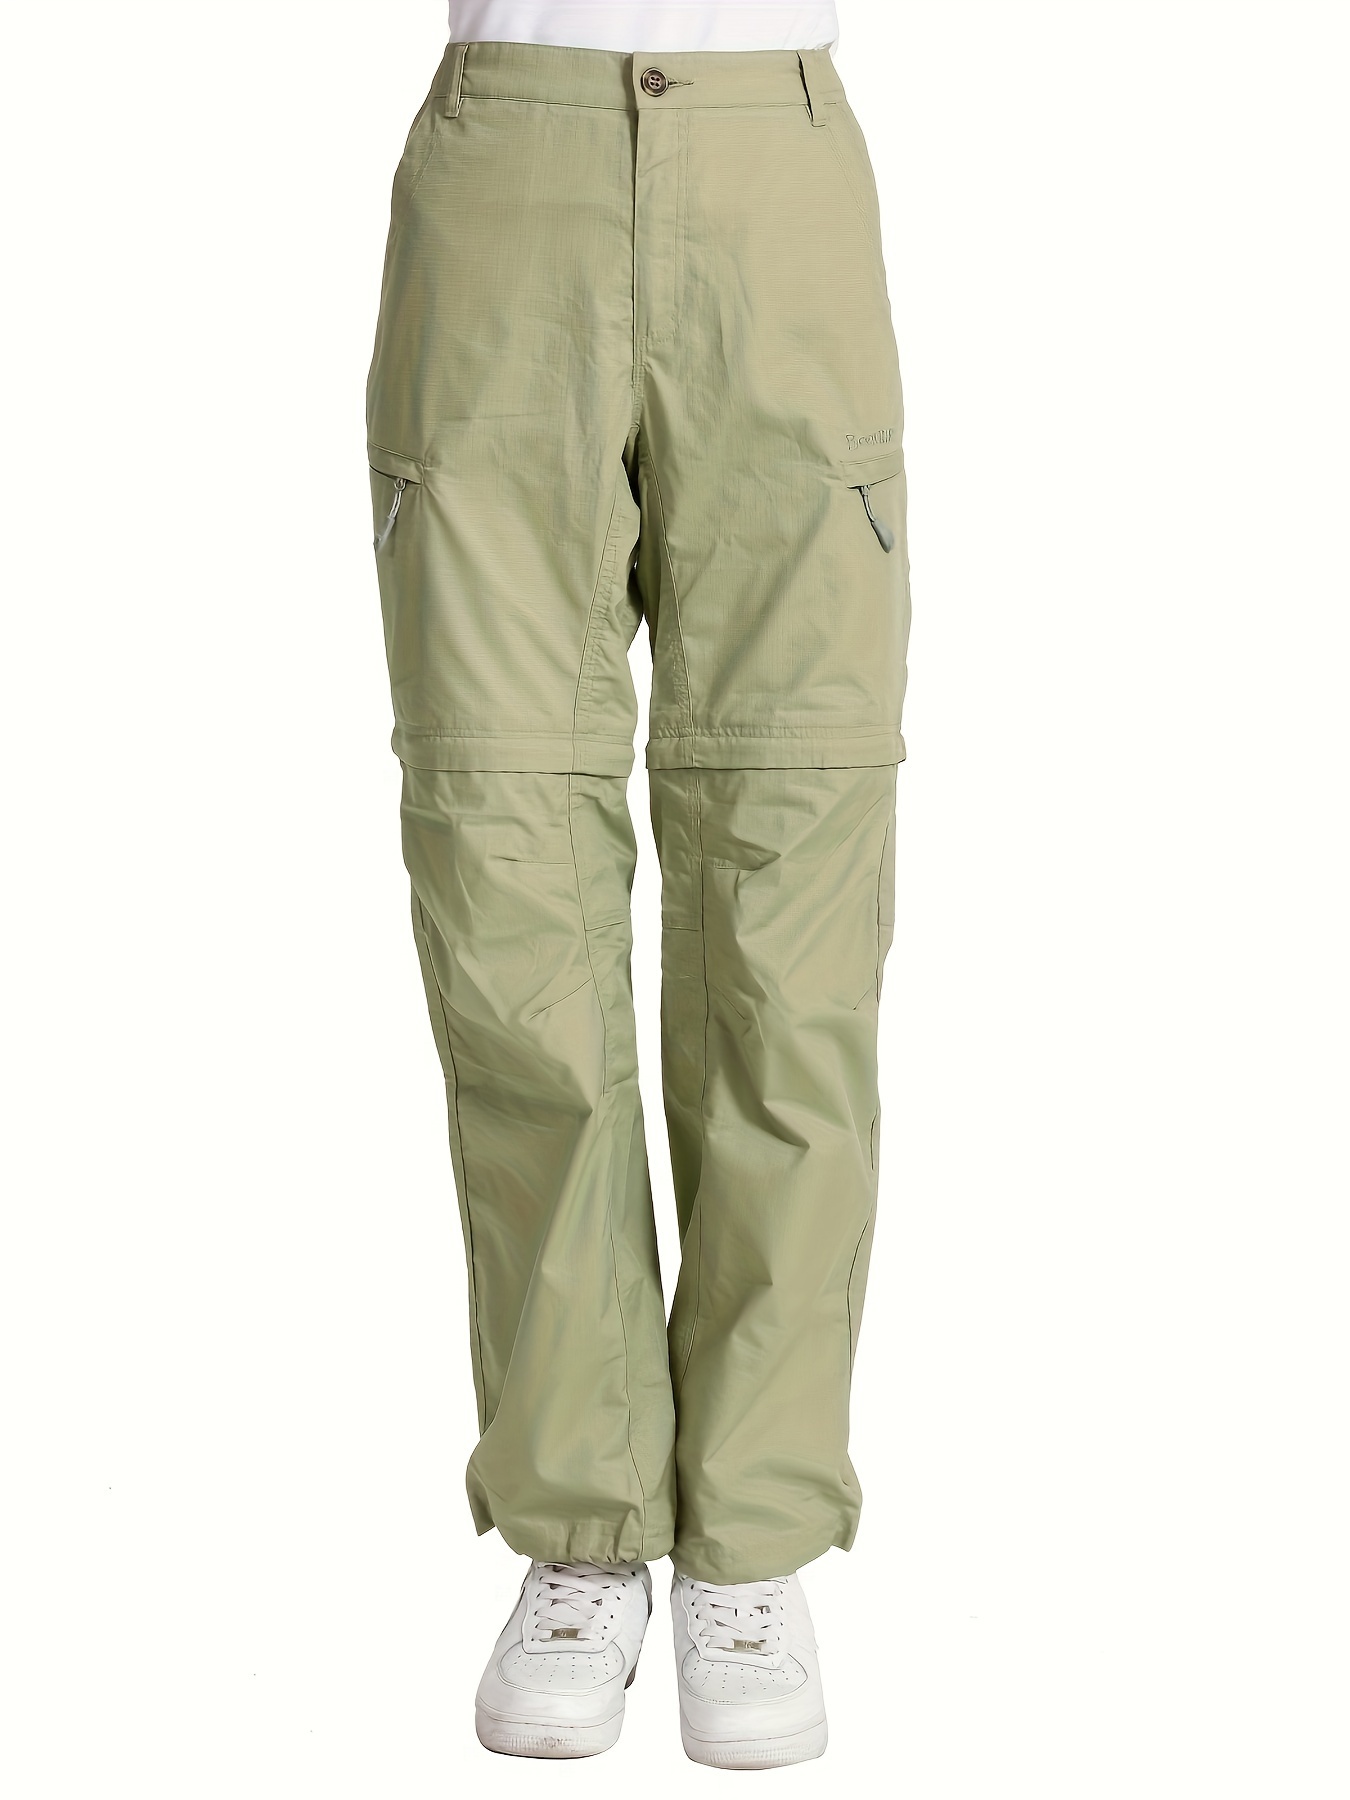 Pantalones cargo para mujer con 6 bolsillos, pantalones de senderismo  ligeros de tiro alto con cordón, pantalones de entrenamiento casuales al  aire